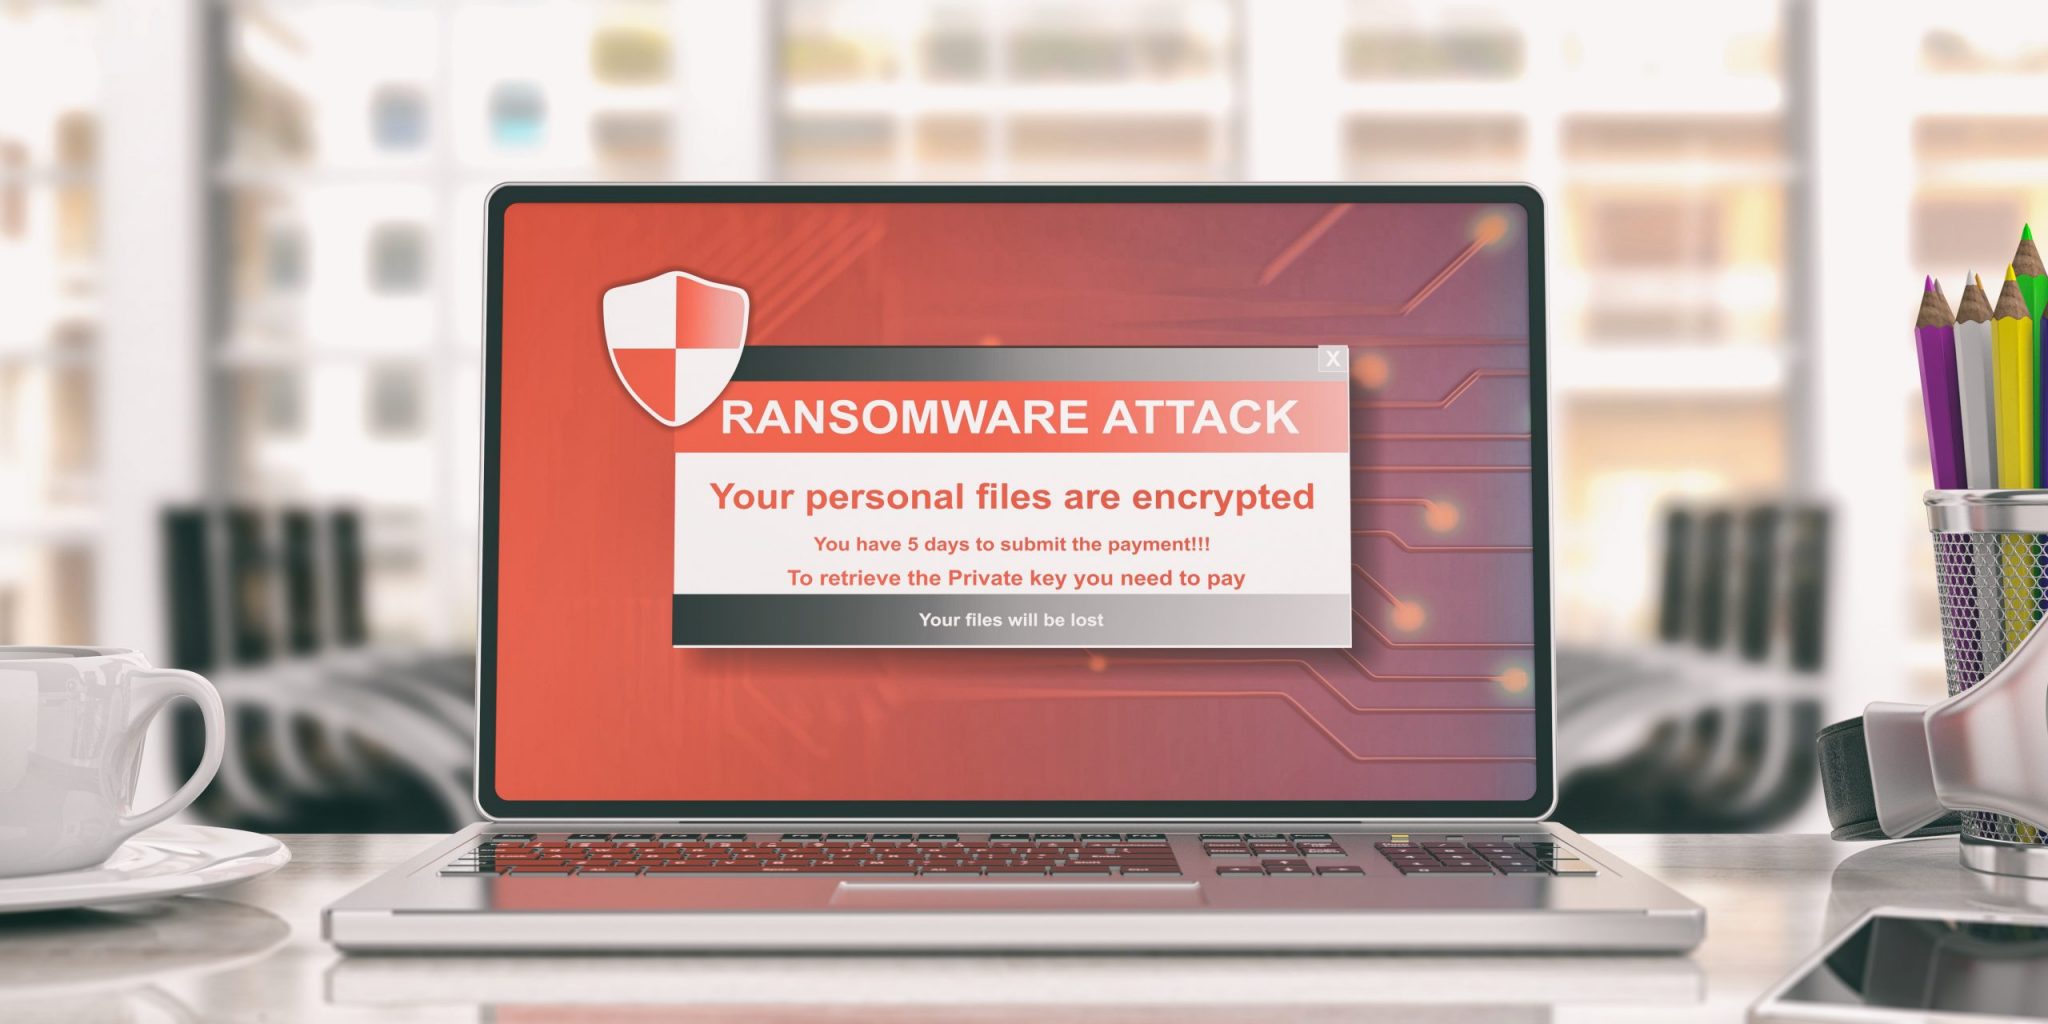 Ransomware virus alert on a computer laptop screen